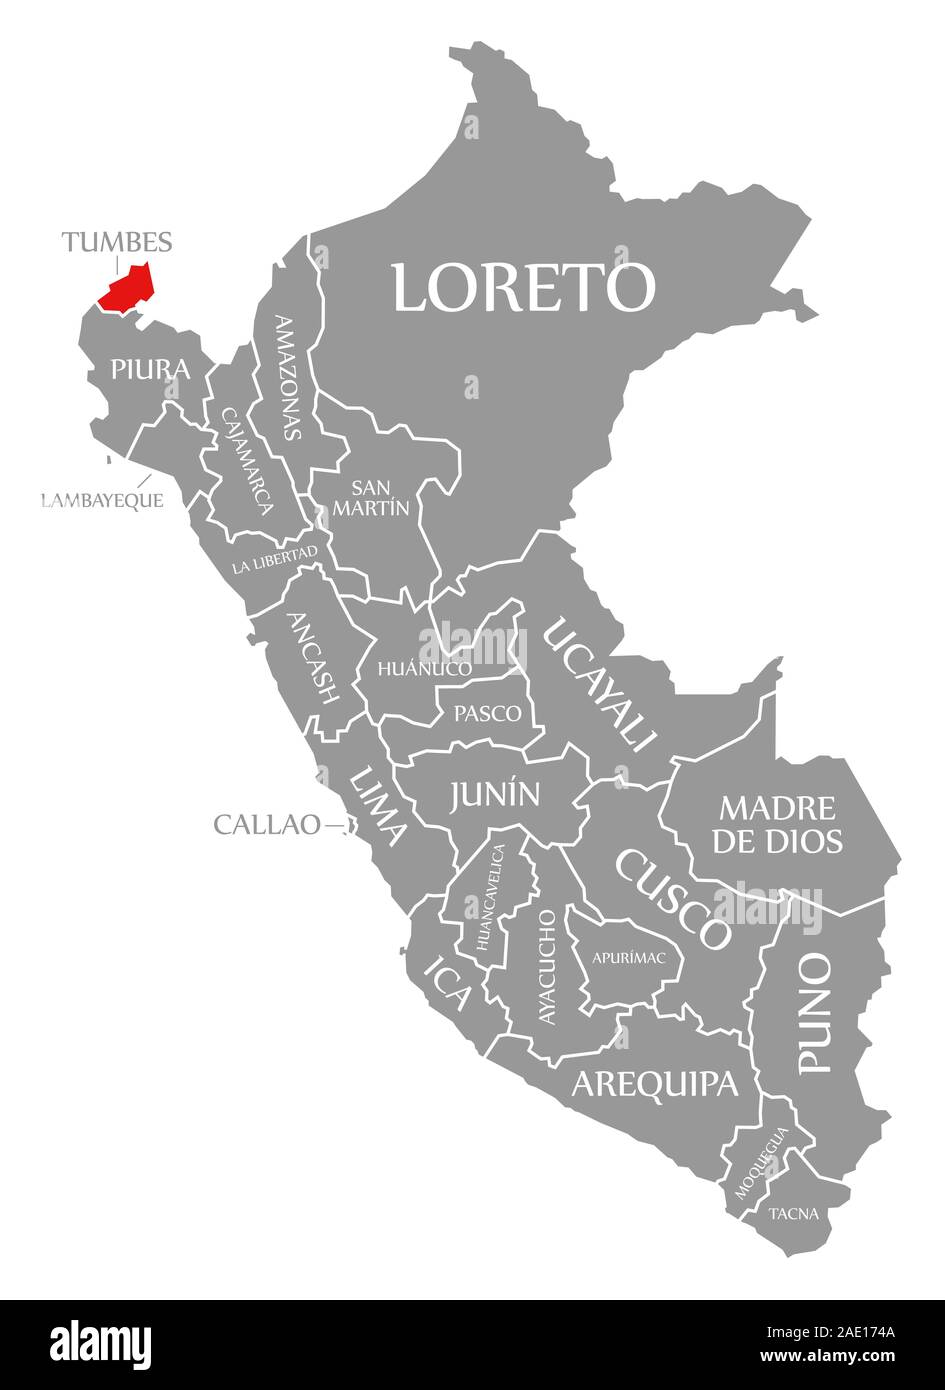 Tumbes evidenziata in rosso nella mappa di Perù Foto Stock